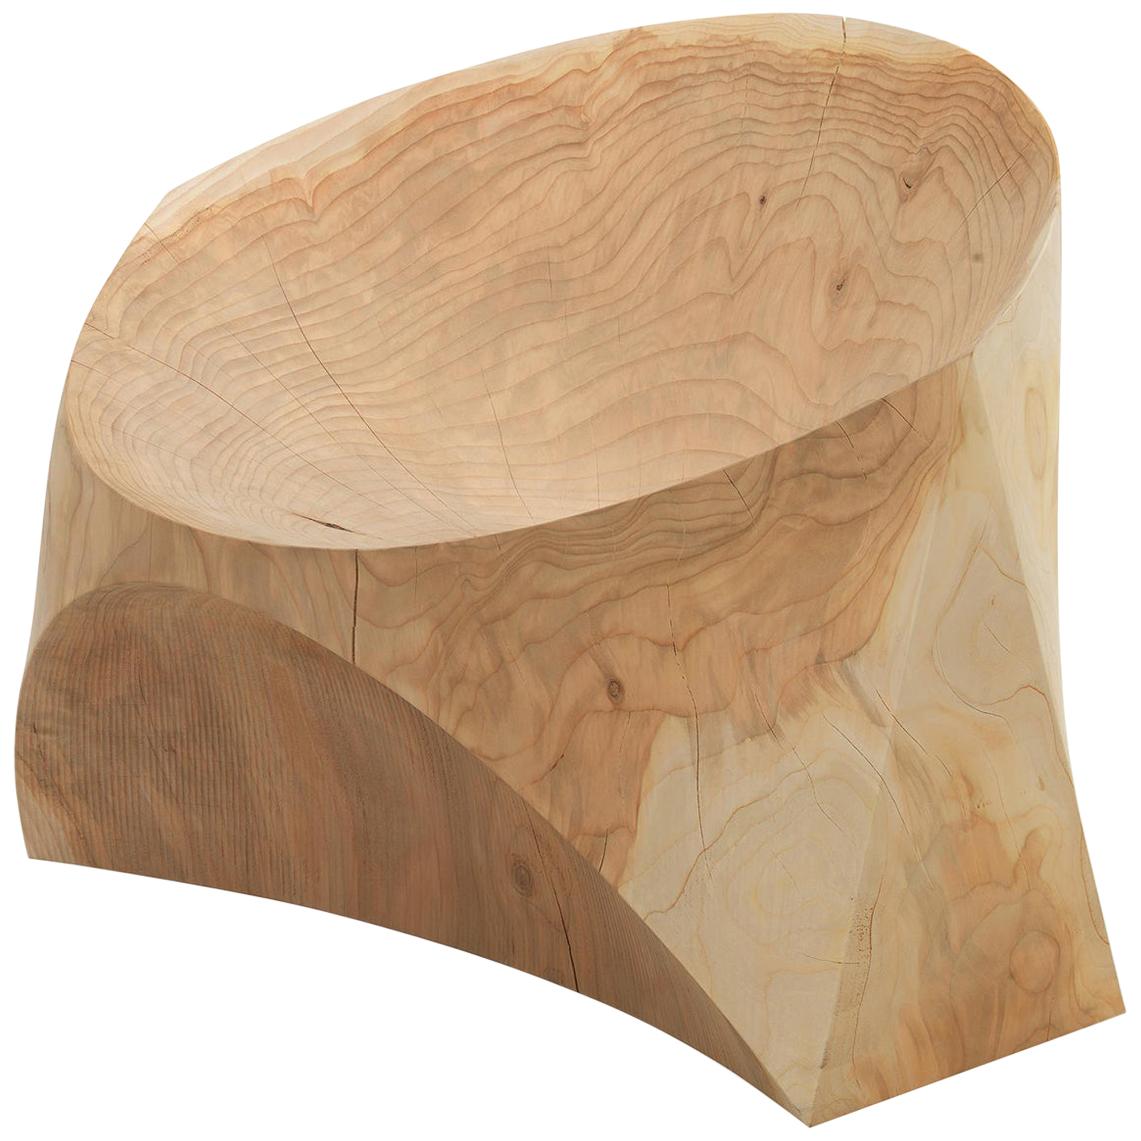 Kruger Armchair in Solid Cedar Wood